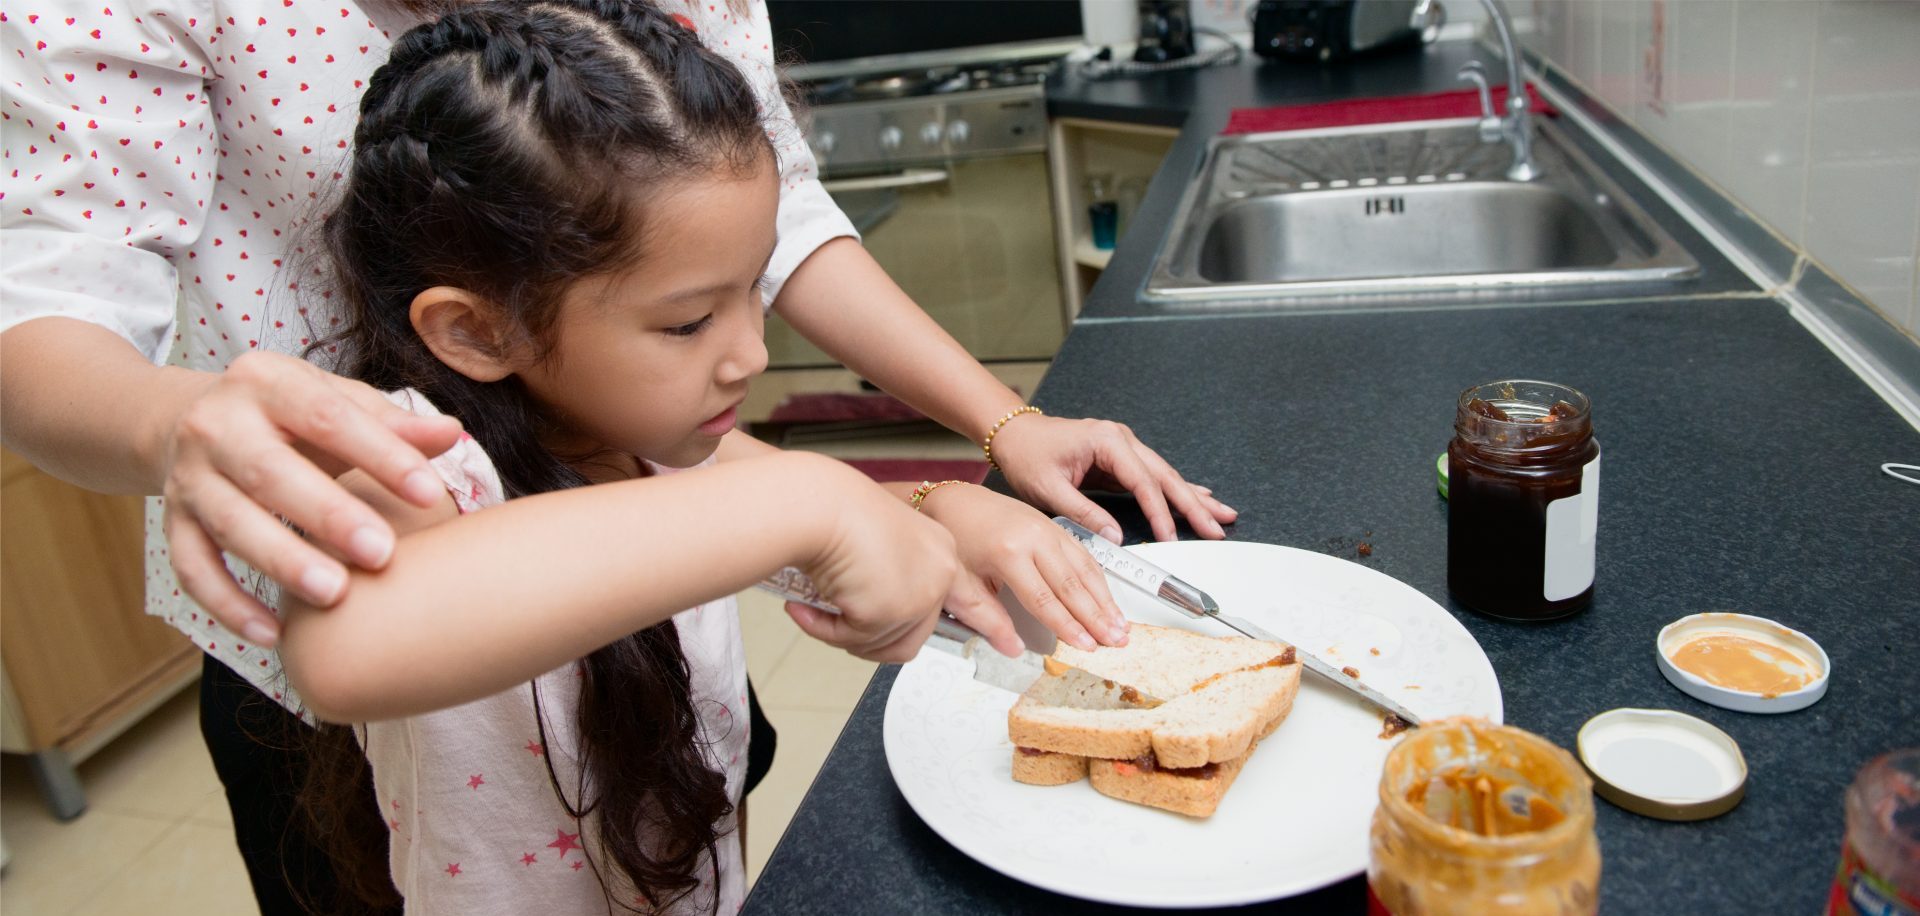 A child cutting a peanut butter sandwich with a parent’s help.